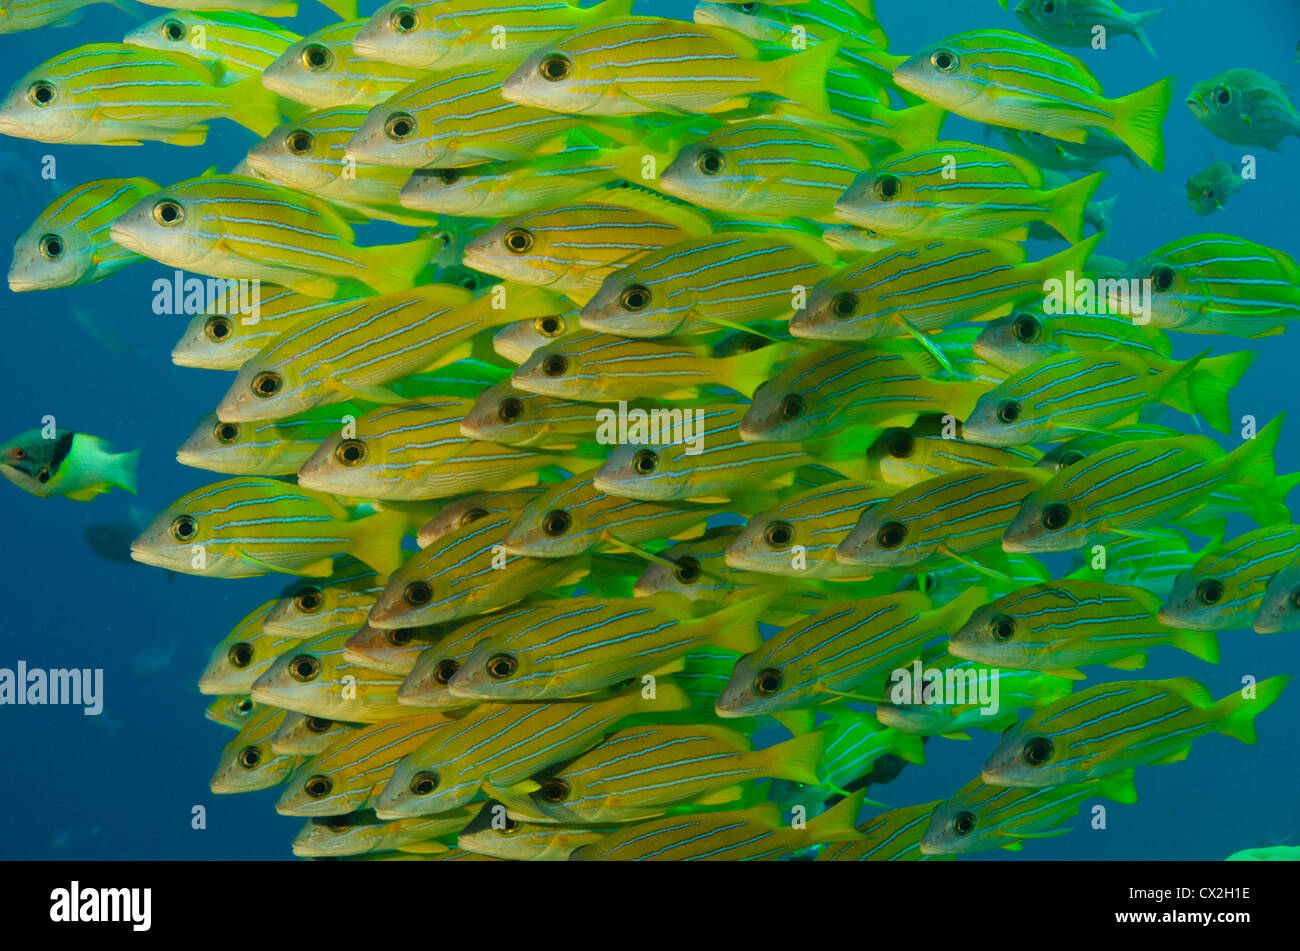 Escena subacuática de Palau, arrecifes de coral, la vida marina del arrecife tropical pargo, ronco, escuela de pargo ronco, amarillo, de la sociedad. Foto de stock